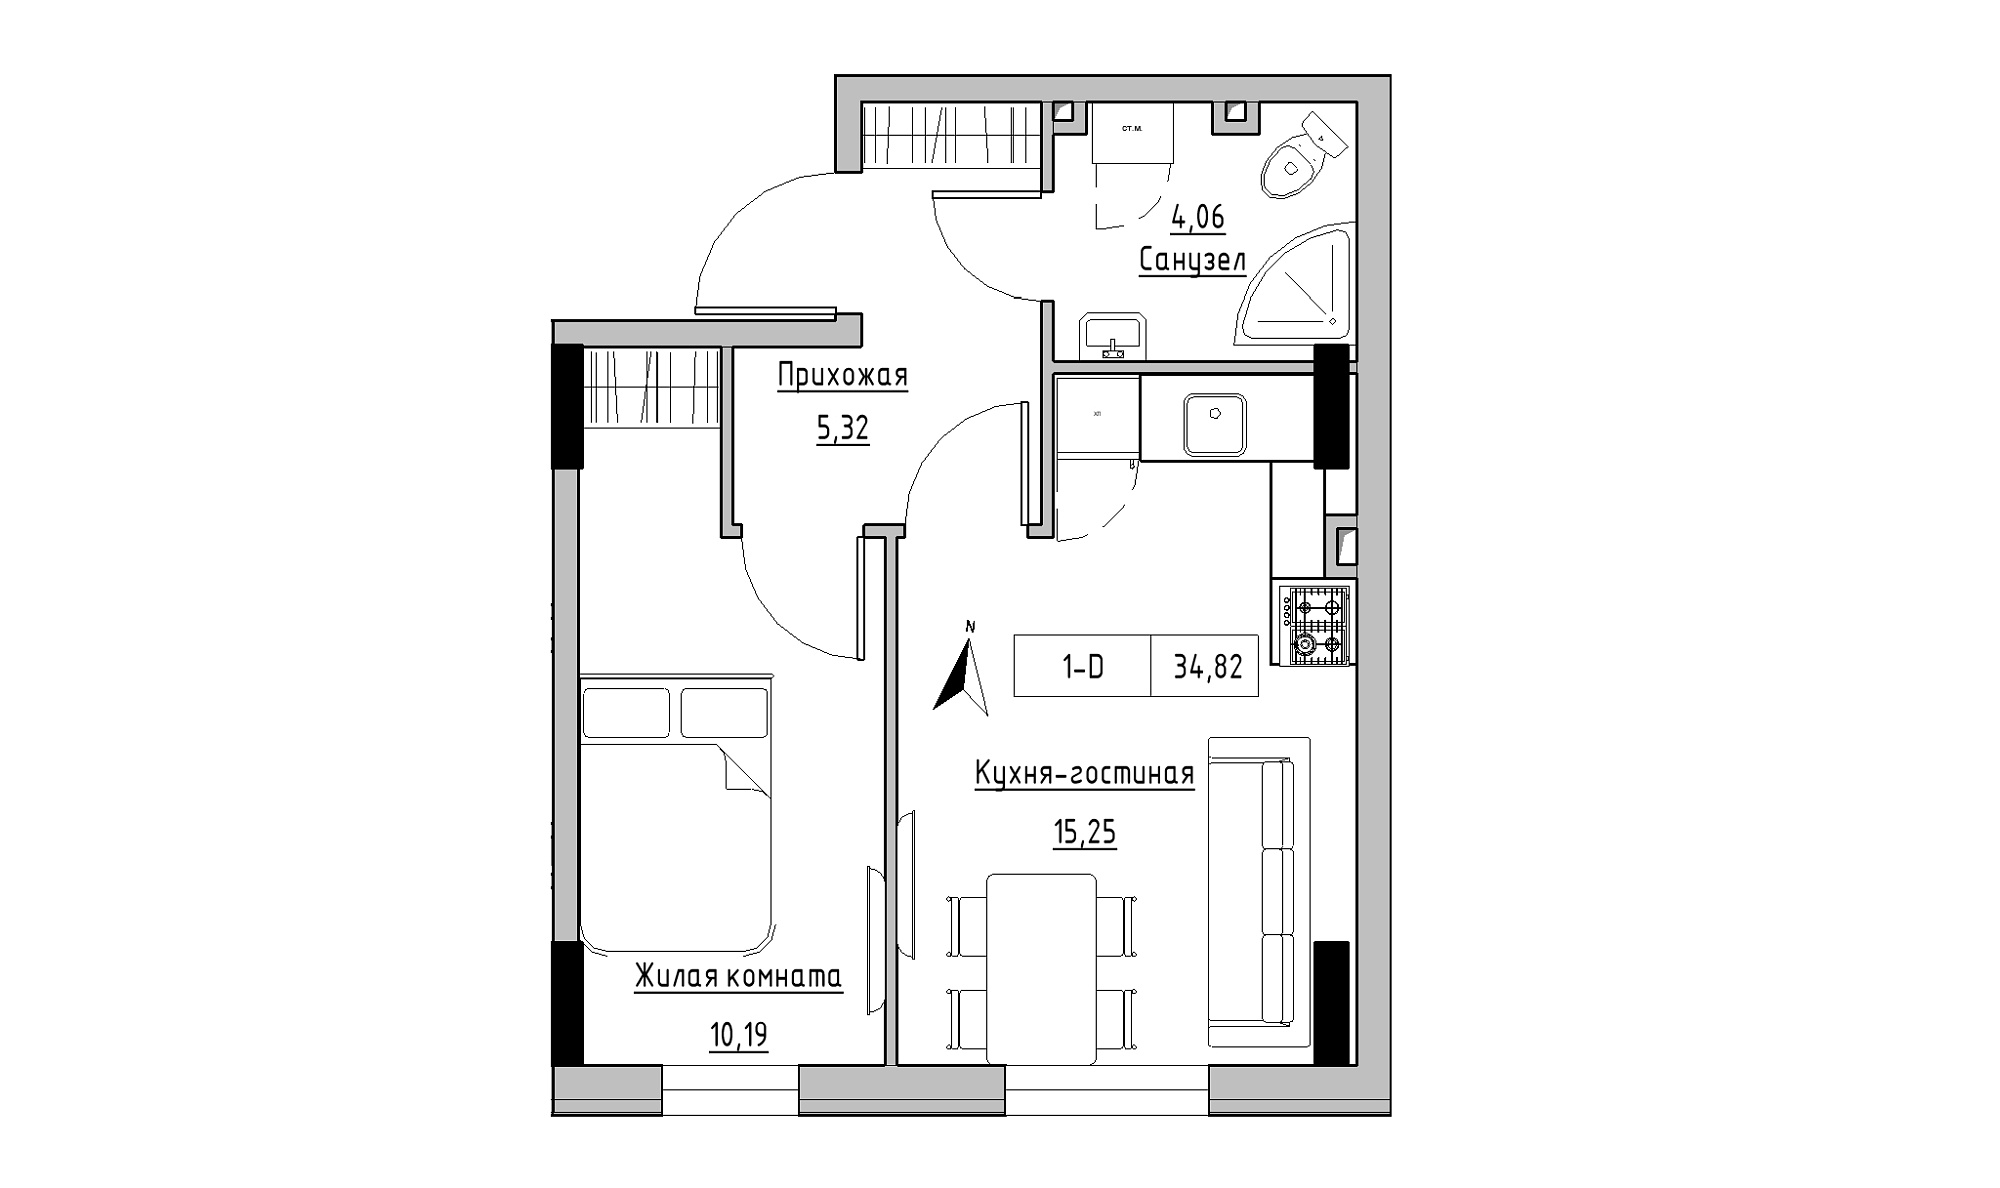 Планування 1-к квартира площею 34.82м2, KS-025-01/0011.